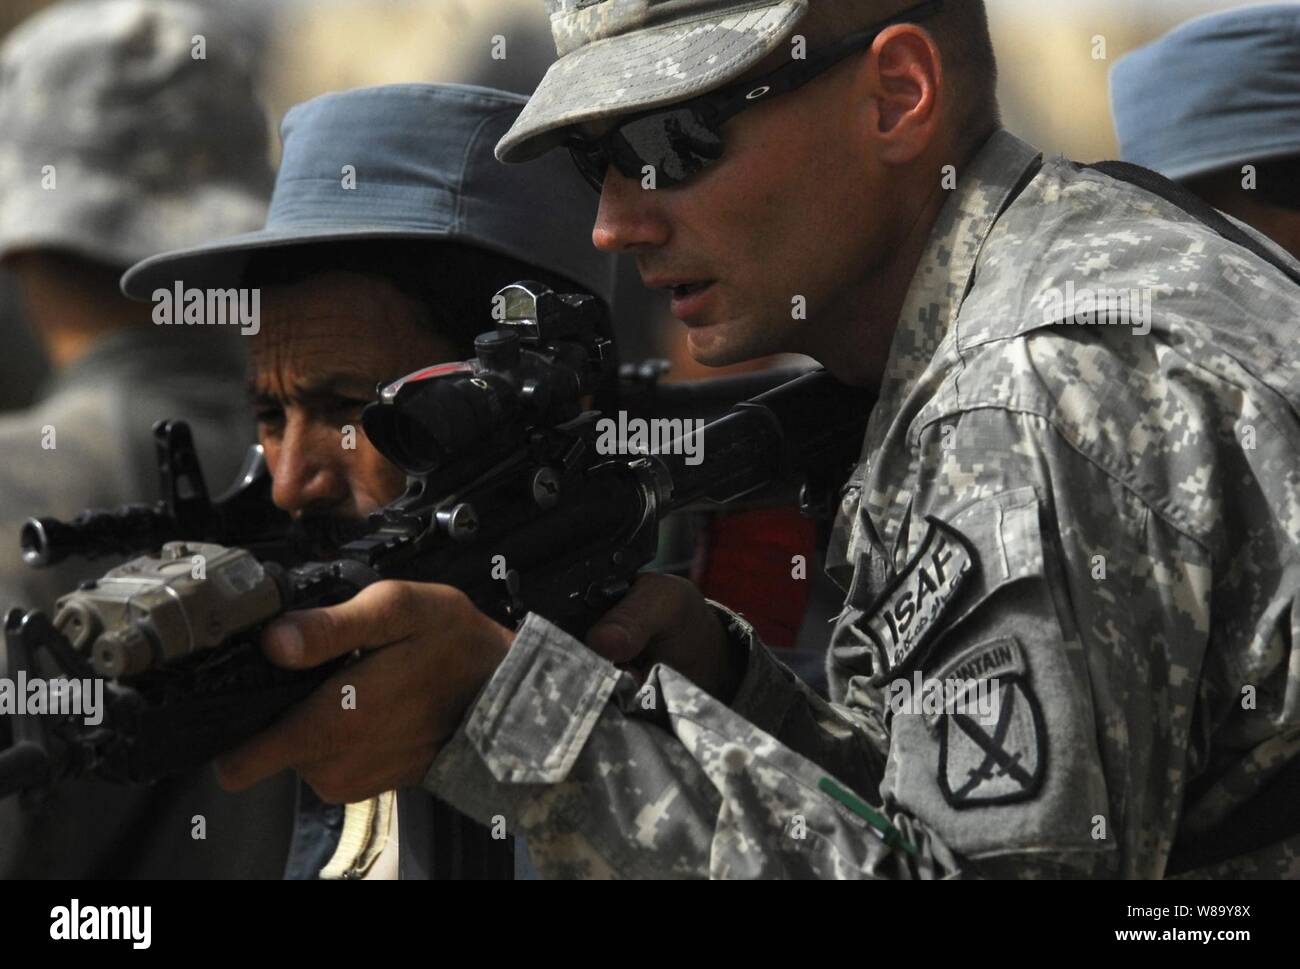 Stati Uniti Army Sgt. James Henderson (destra) del 1° Battaglione, 87th Reggimento di Fanteria, decimo Montagna divisione assiste una polizia nazionale afgana officer durante la chiamata di formazione presso il quartier generale della polizia in Chahar Dara, Afghanistan, che il 28 agosto, 2010. Foto Stock